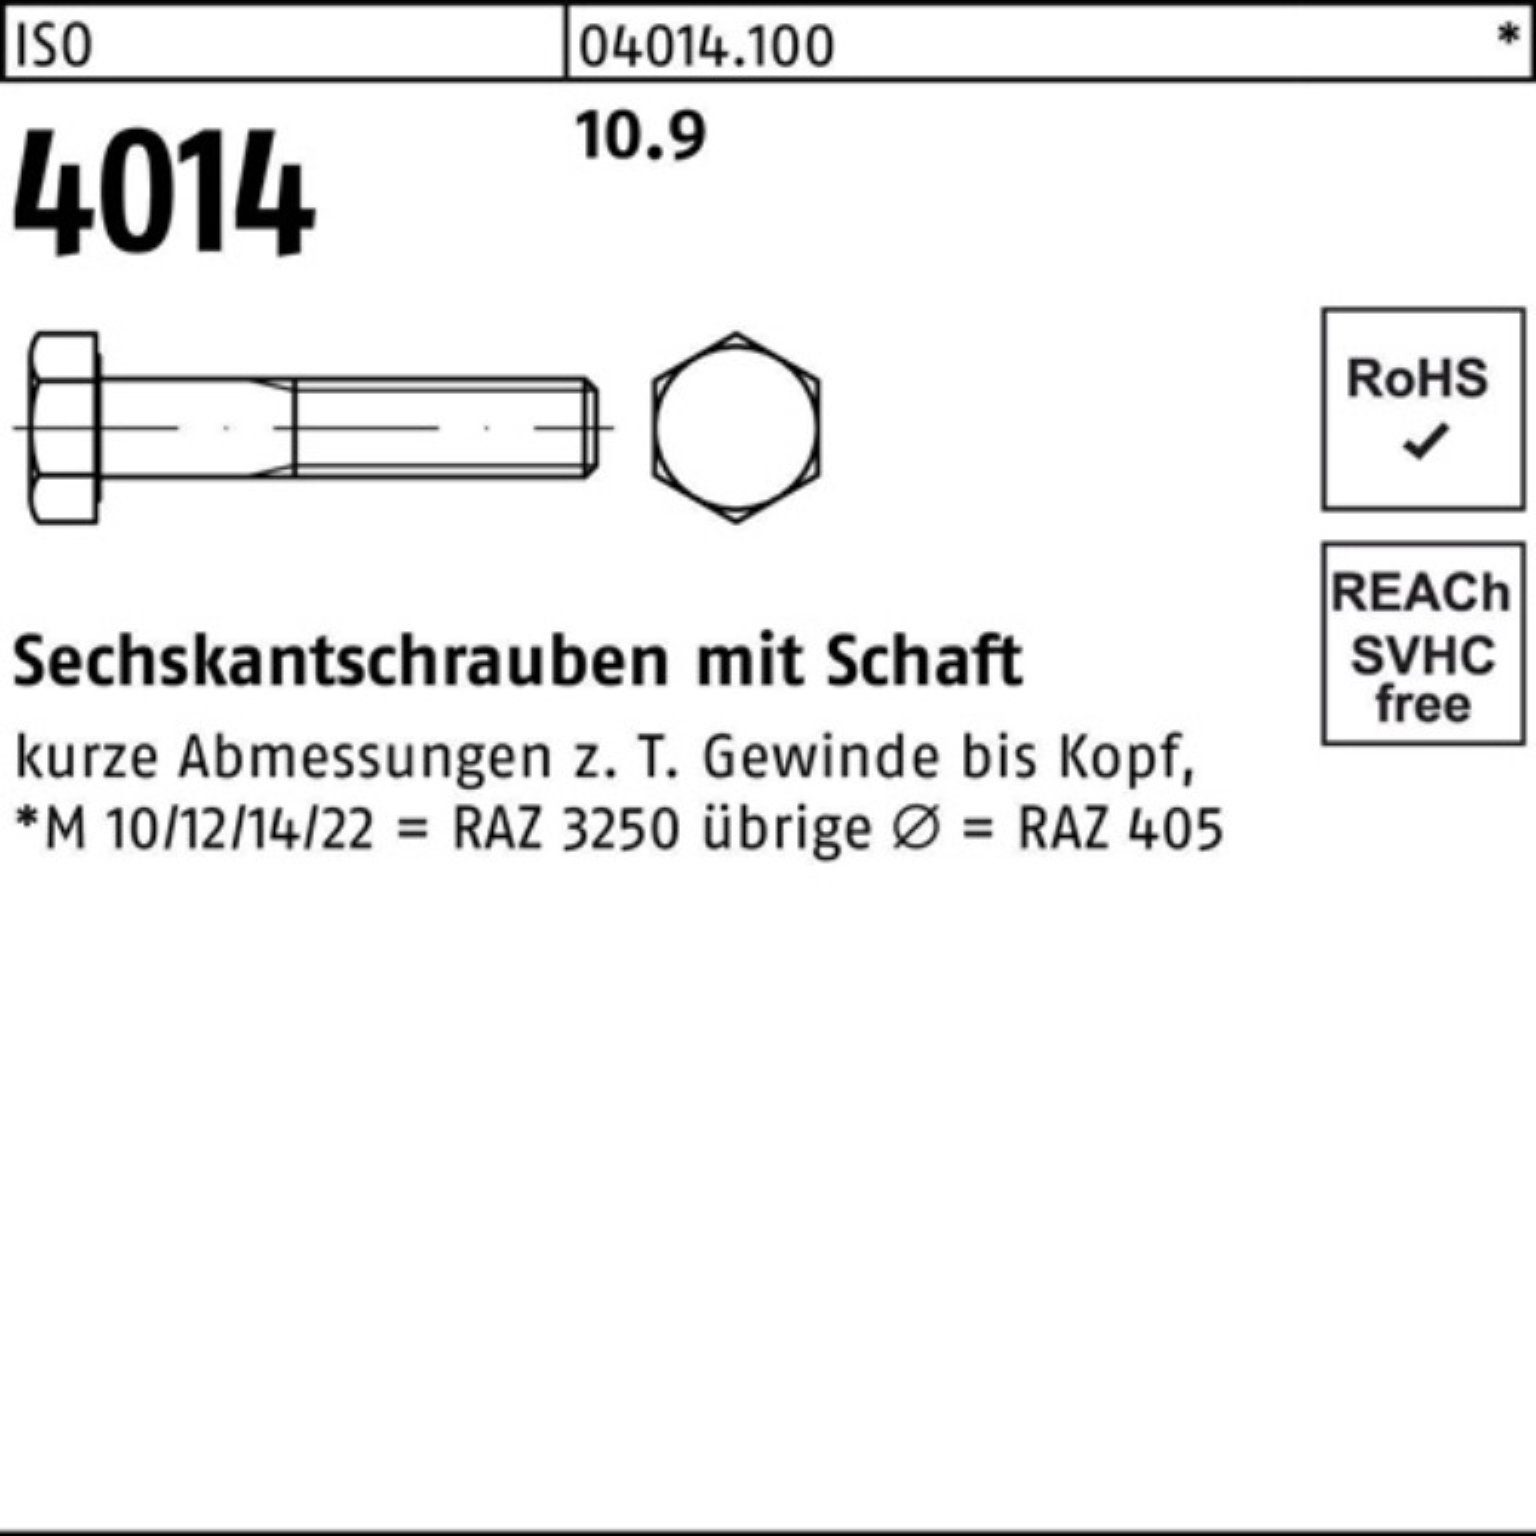 Sechskantschraube 150 100er Bufab Stück ISO 10.9 M39x Pack Sechskantschraube IS 4014 Schaft 1